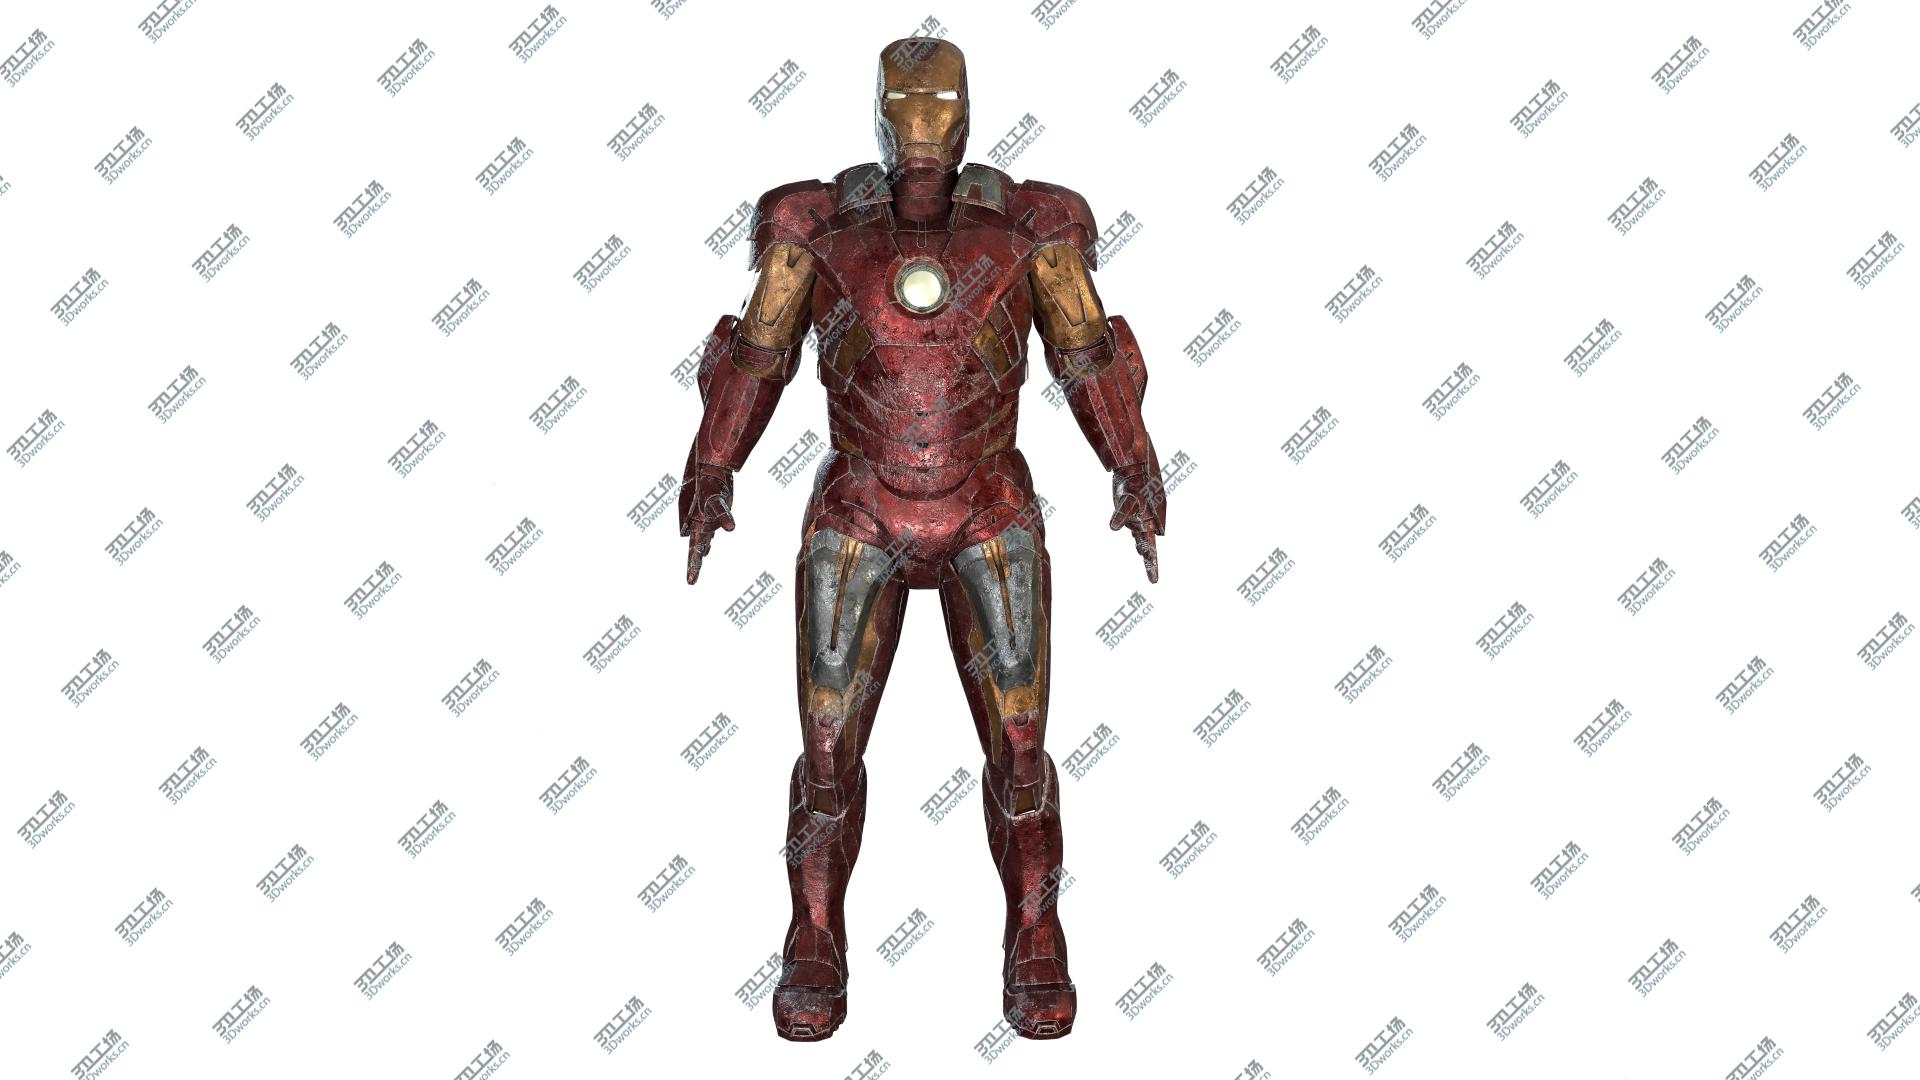 images/goods_img/202104093/3D Iron Man Mark VII model/5.jpg